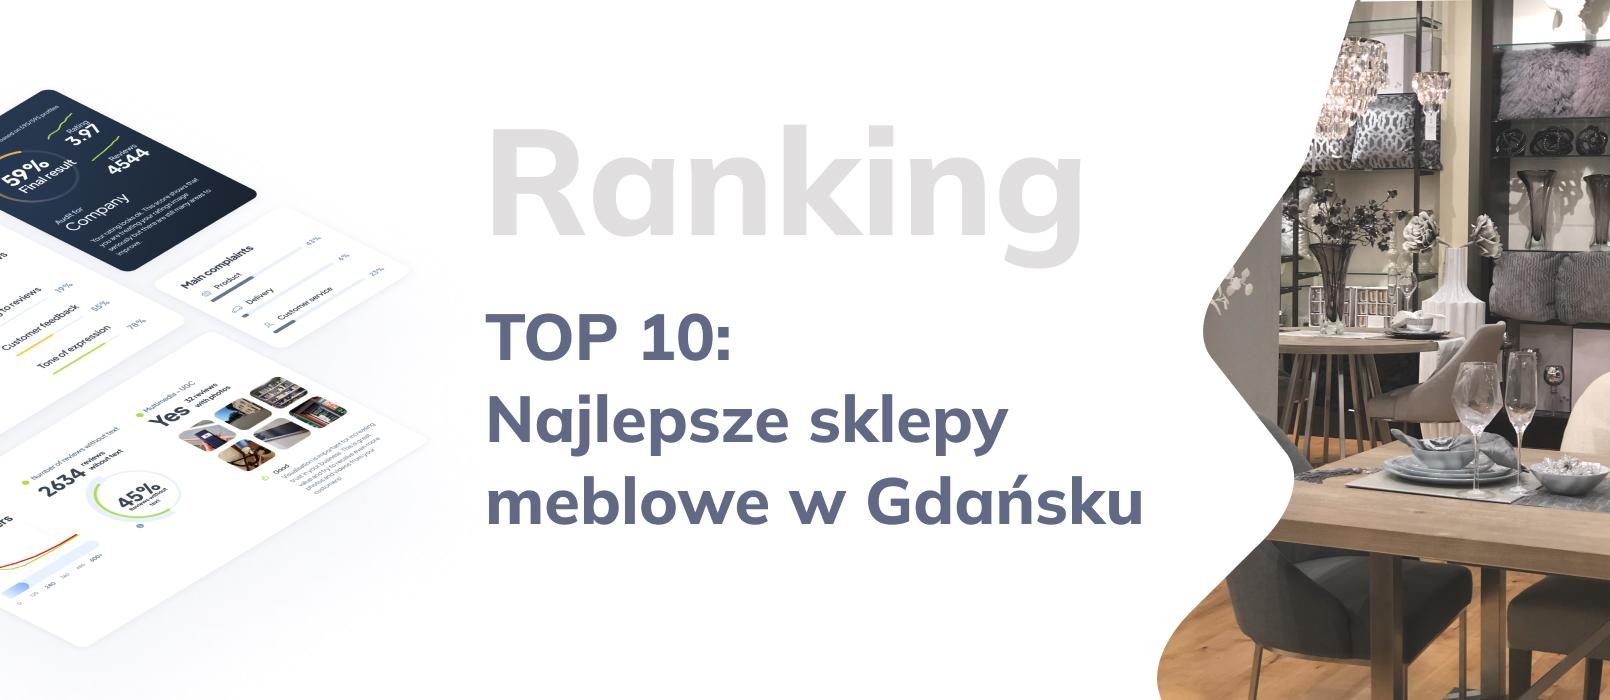 TOP 10 najlepszych sklepów meblowych w Gdańsku - ranking najlepszych sklepów z meblami 